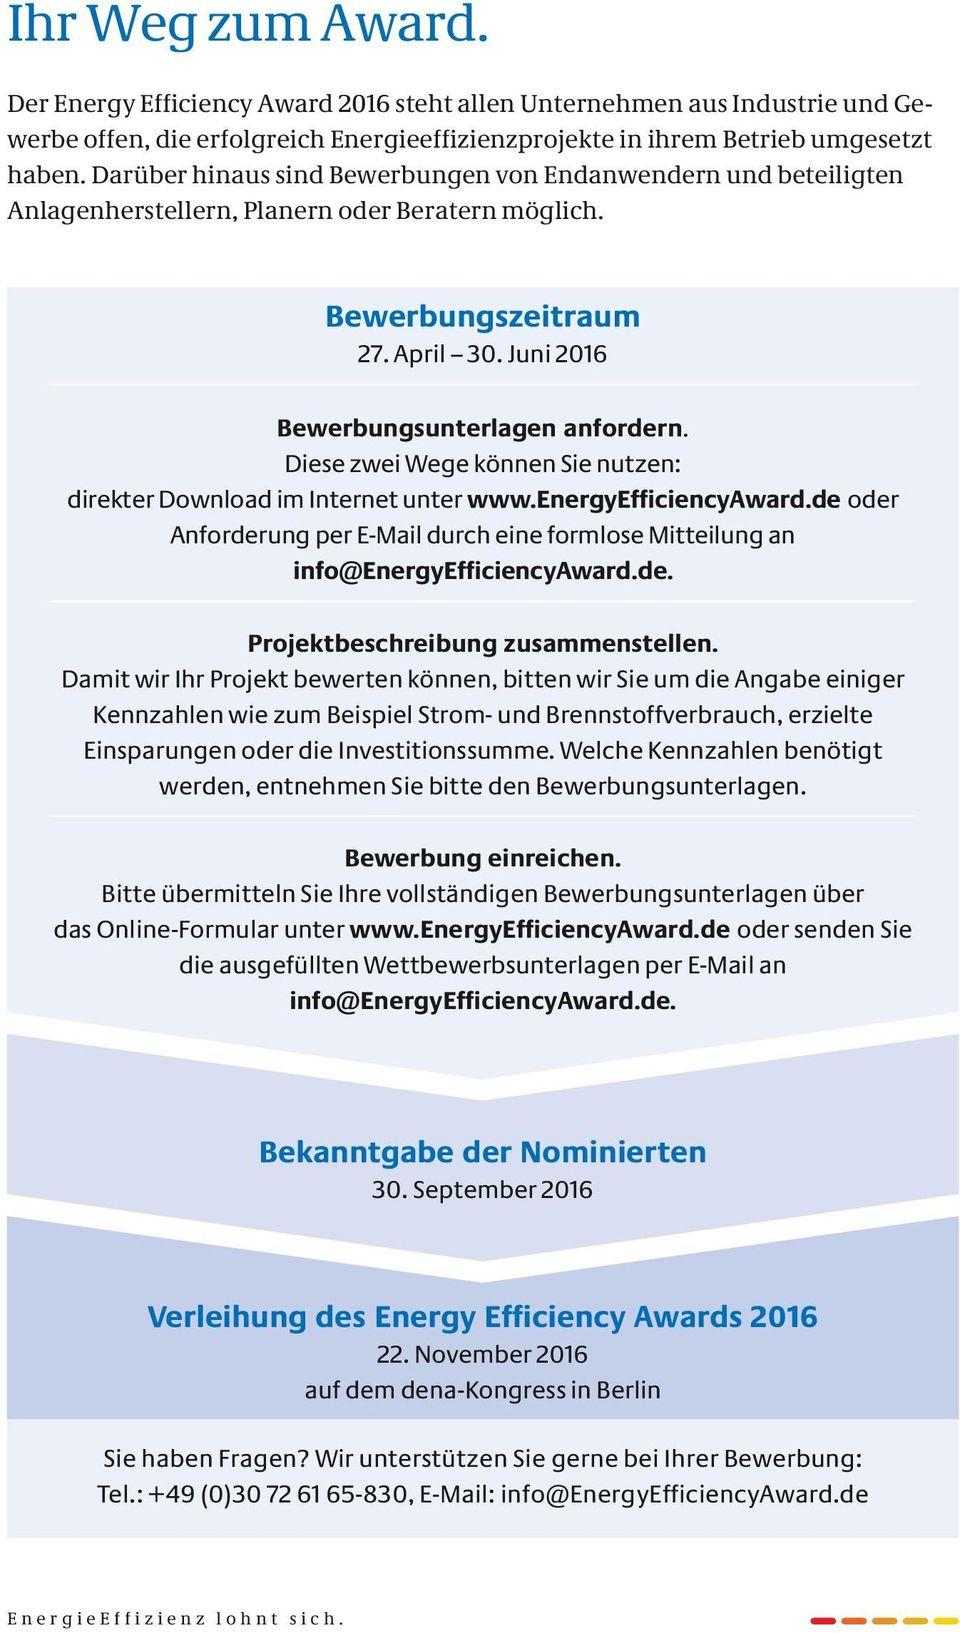 Diese zwei Wege können Sie nutzen: direkter Download im Internet unter www.energyefficiencyaward.de oder Anforderung per E-Mail durch eine formlose Mitteilung an info@energyefficiencyaward.de. Projektbeschreibung zusammenstellen.